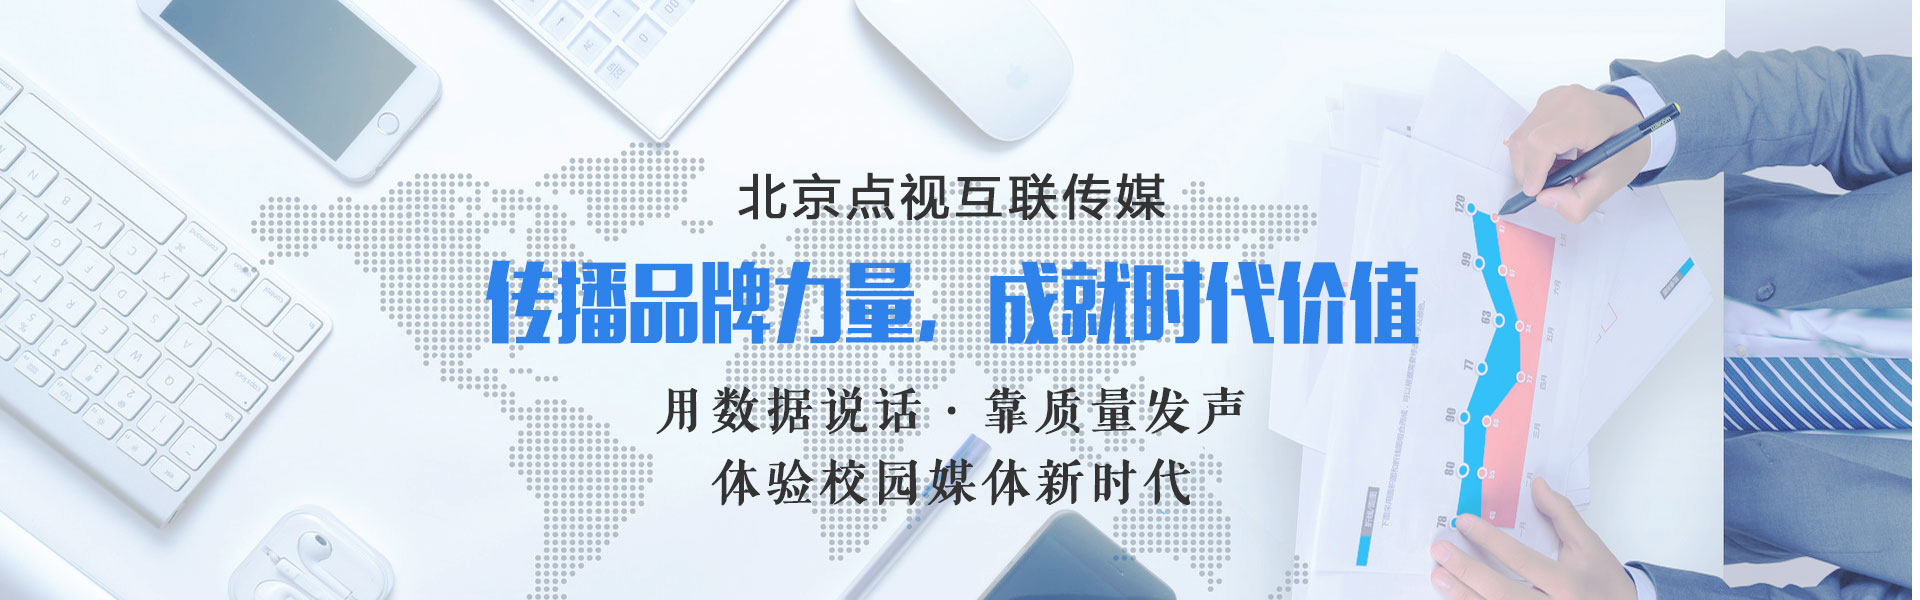 双十一“台陆通”上线台湾专场电商便利台胞网购大陆商品